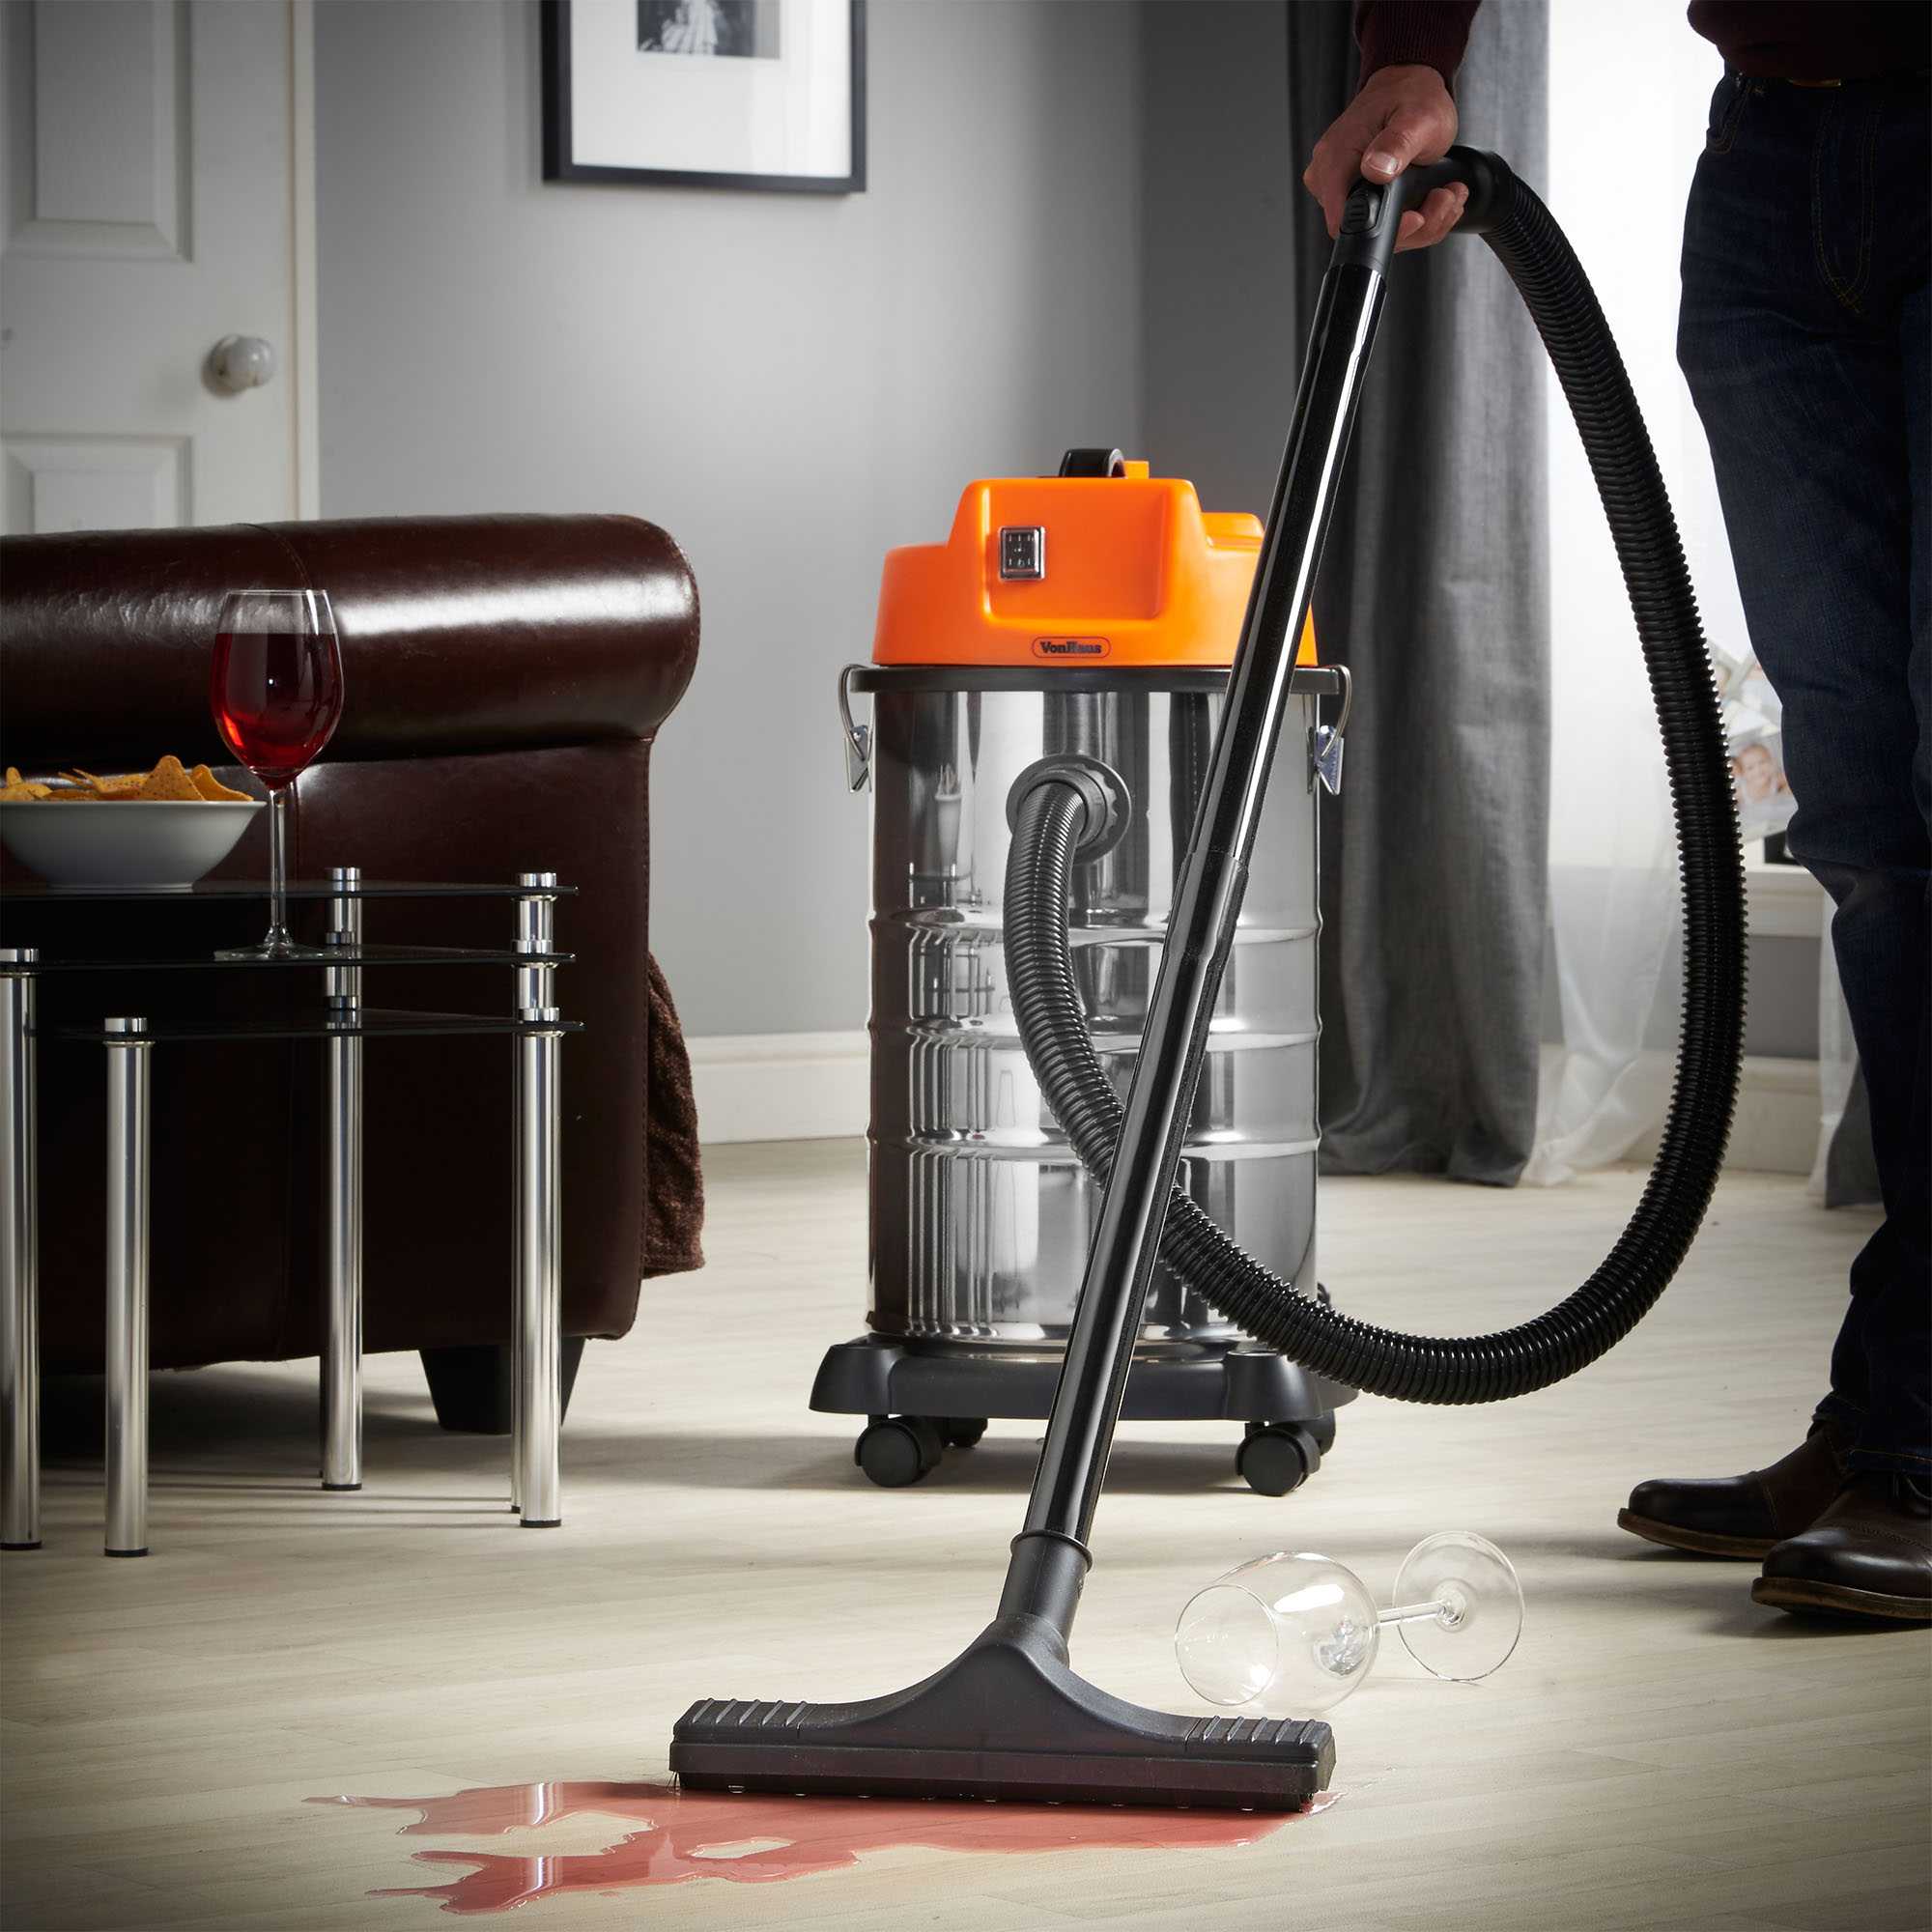 Wet Dry Vacuum Cleaner пылесос h6021